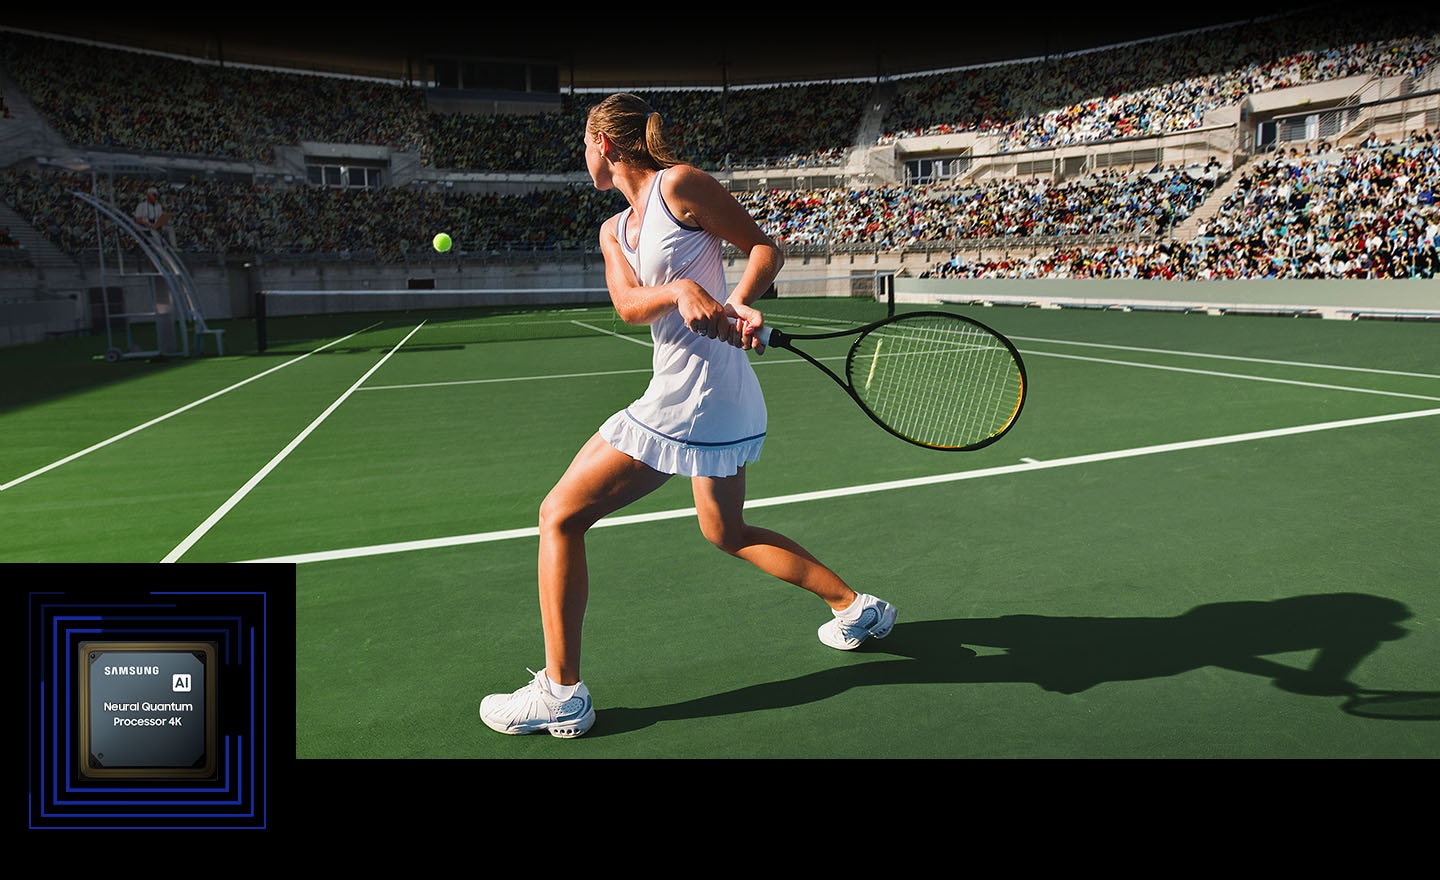 Une femme joue au tennis devant une foule nombreuse.  Le Neural Quantum Processor 4K traite les nombreux objets affichés et améliore l’ensemble de la scène.  Le Neural Quantum Processor 4K est affiché dans le coin inférieur gauche.